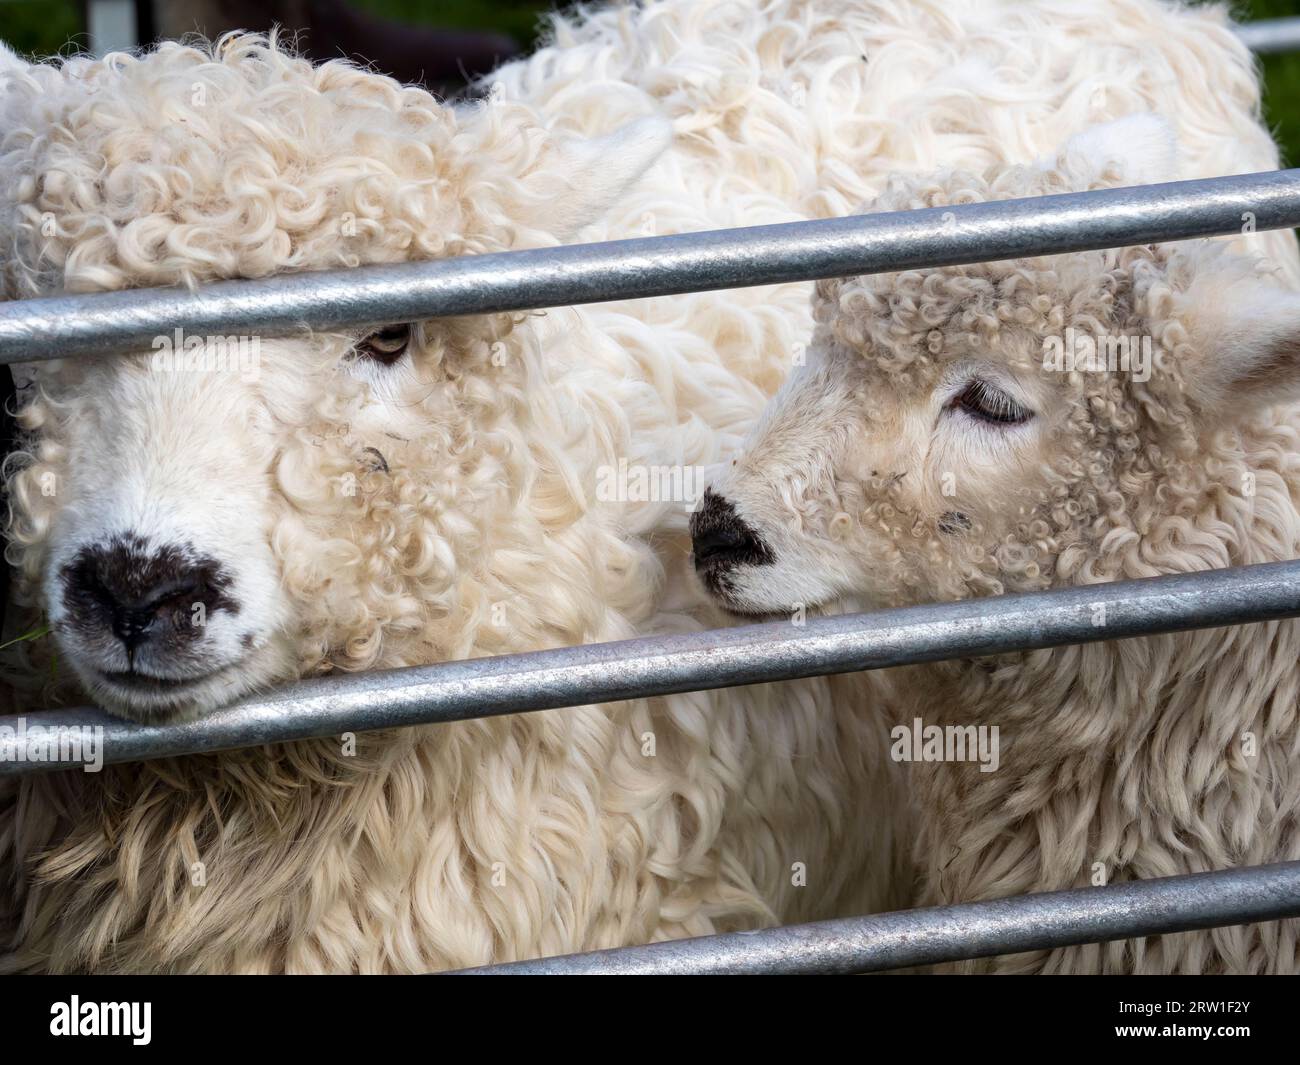 Graugesichtige Dartmoor-Schafe, die auf der jährlichen Landwirtschaftsmesse Broughton in Furness in Cumbria, Großbritannien, ausgestellt werden. Stockfoto